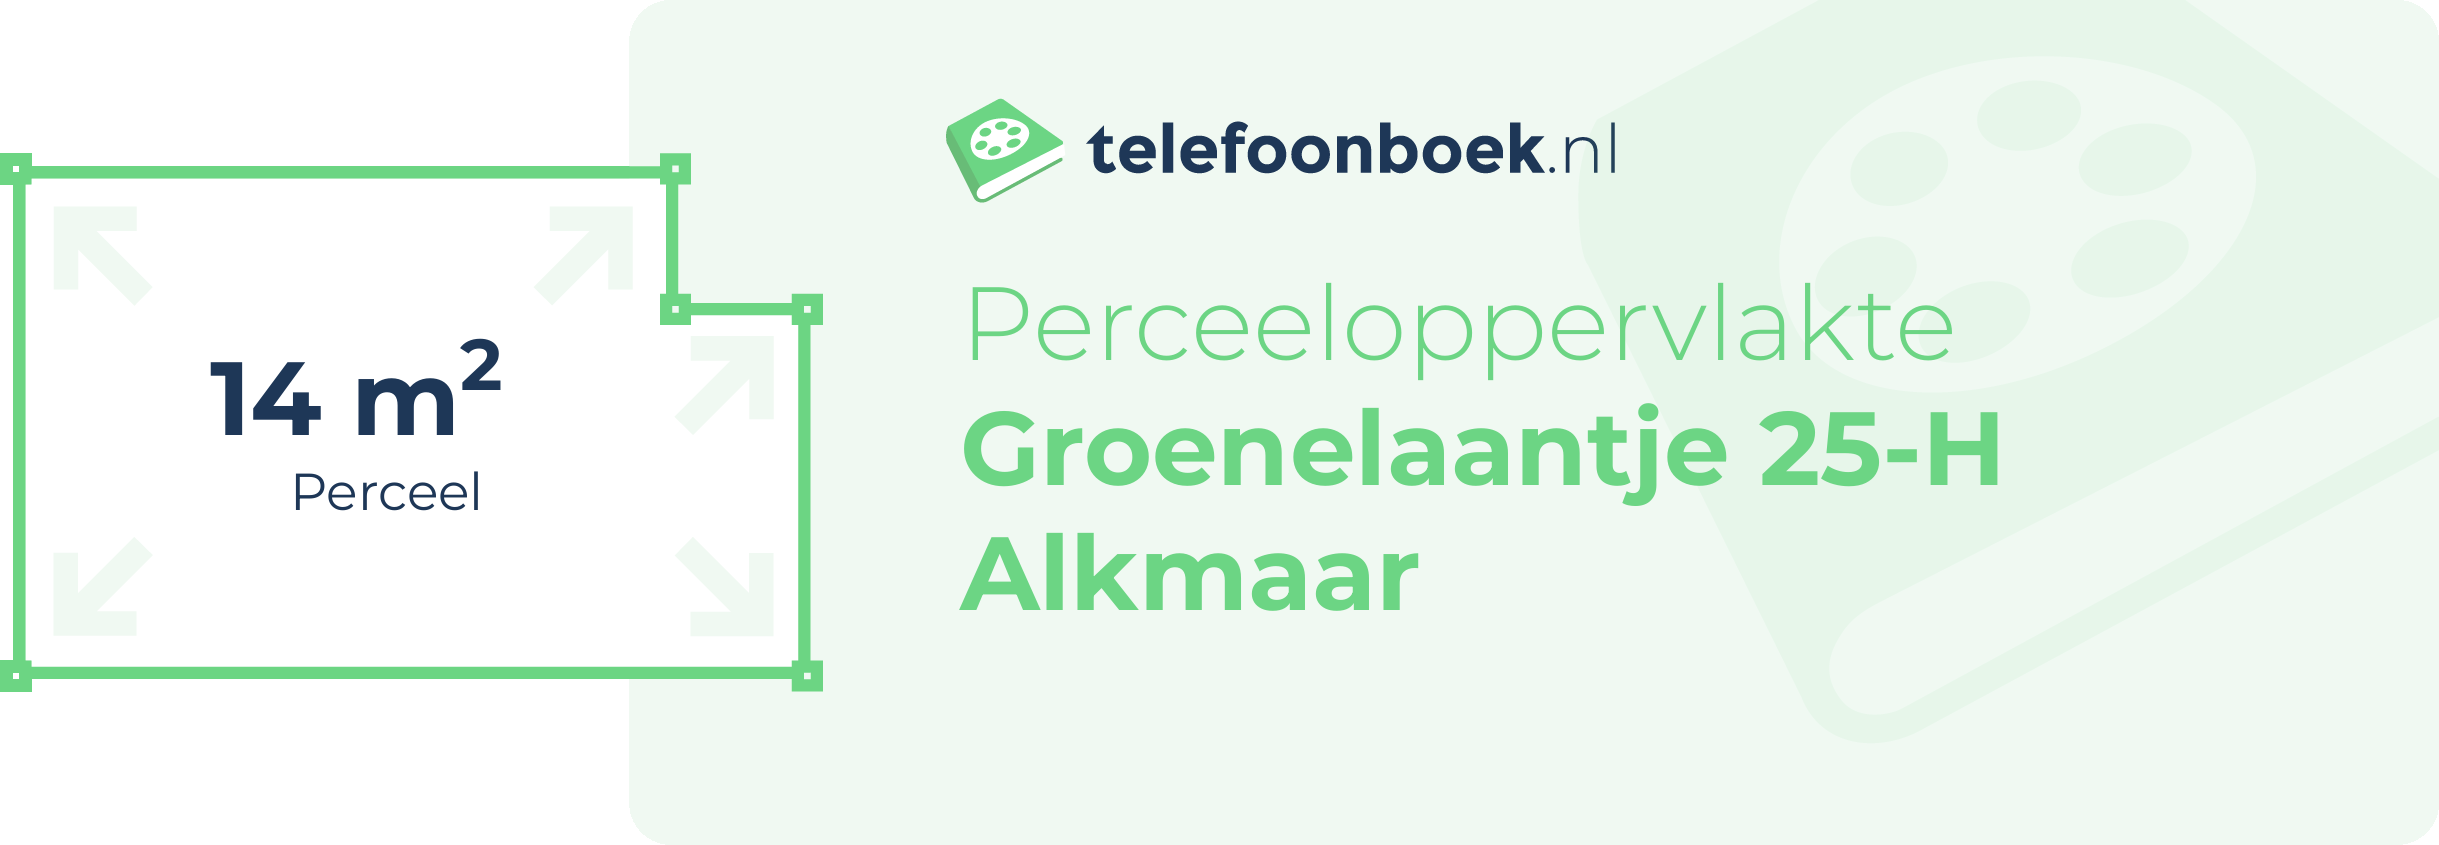 Perceeloppervlakte Groenelaantje 25-H Alkmaar